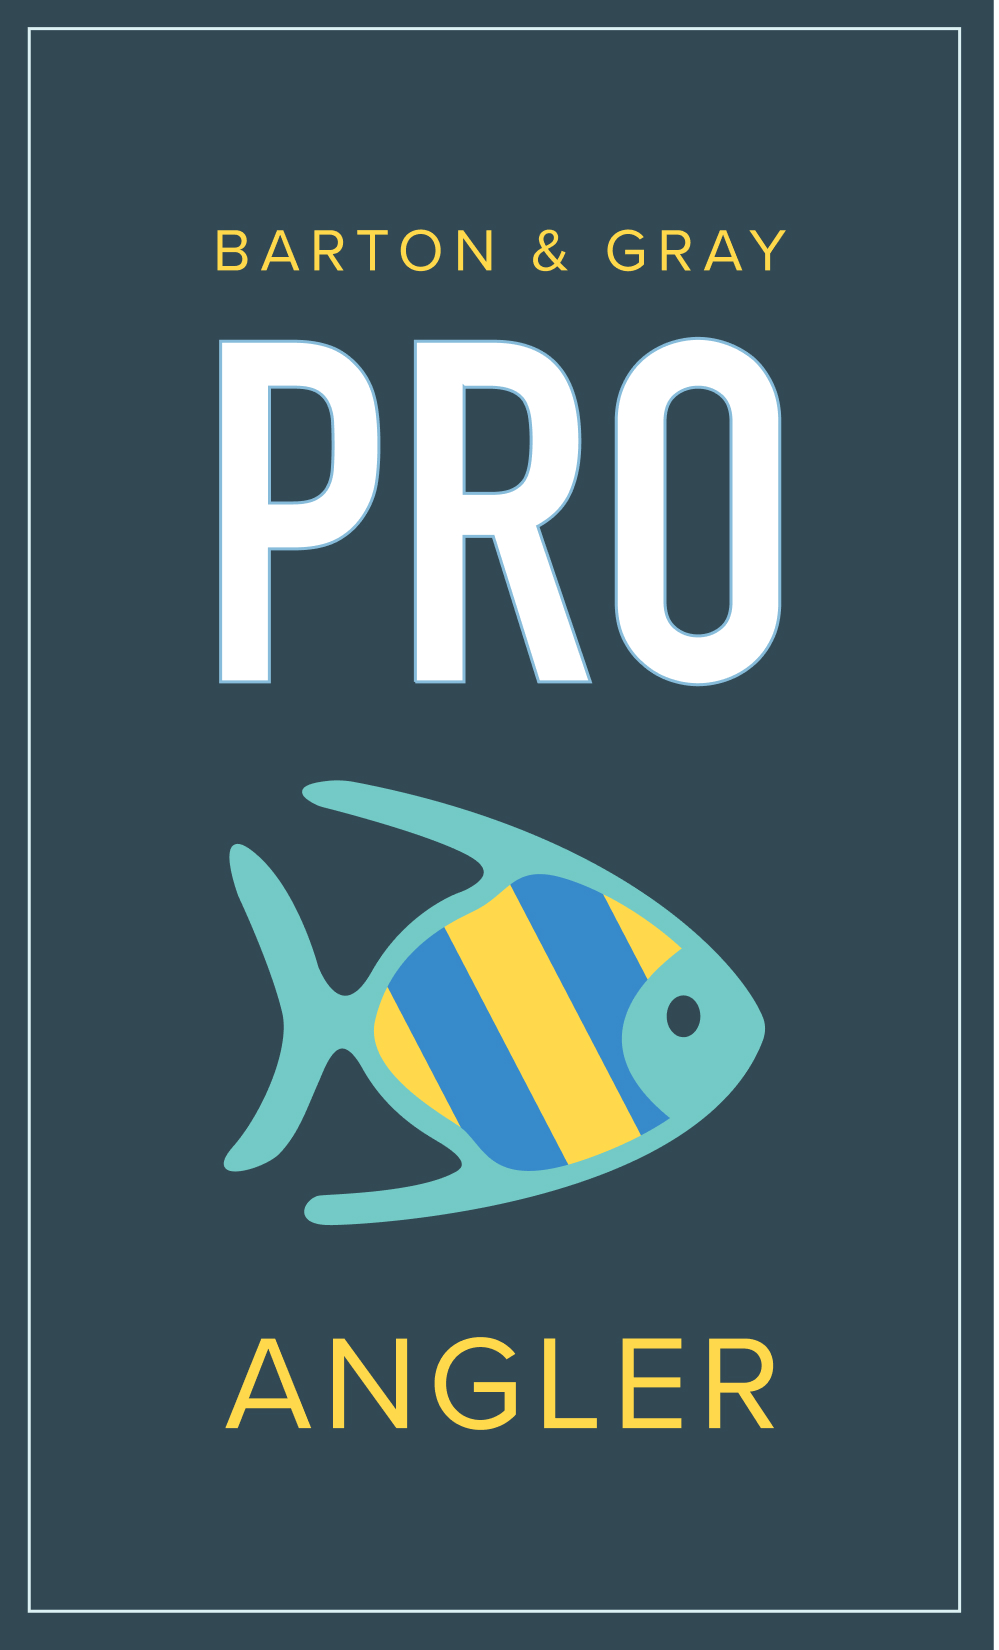 B&G Pro Angler Banner